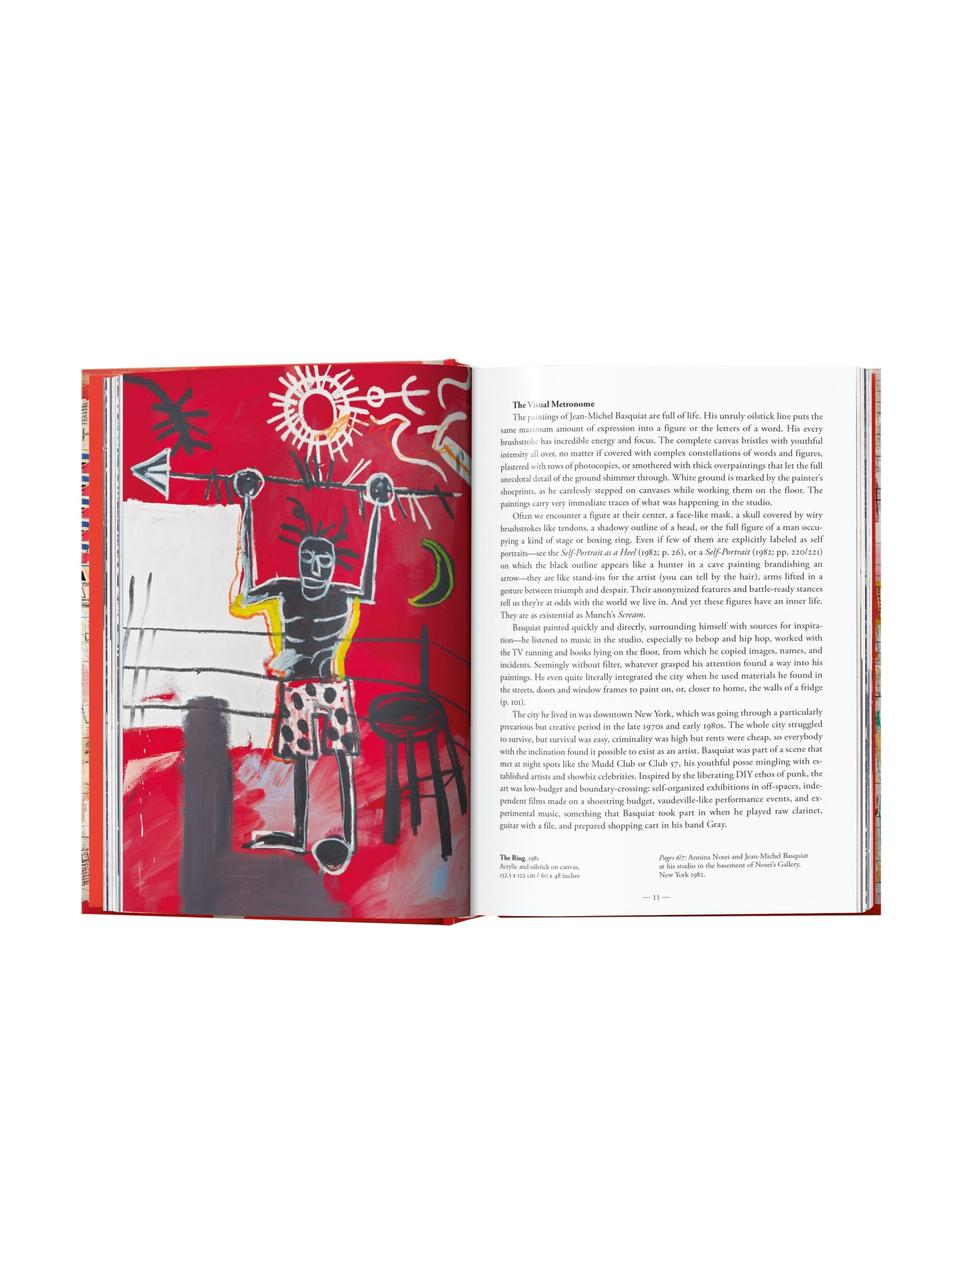 Libro illustrato Basquiat, Carta, cornice rigida, Basquiat, Larg. 16 x Alt. 22 cm